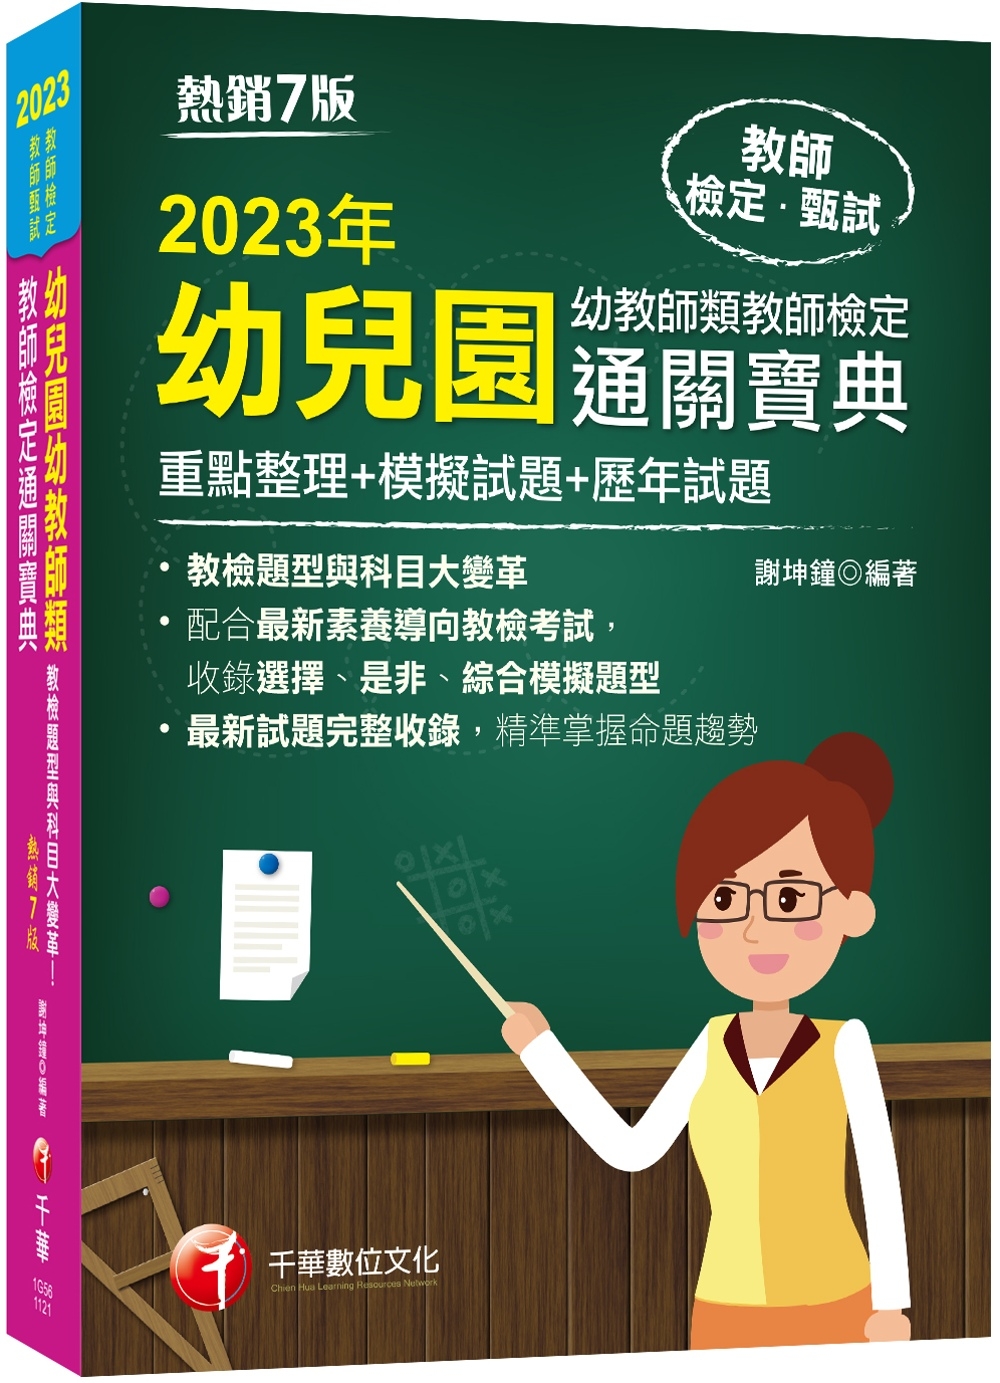 2023幼兒園幼教師類教師檢定...